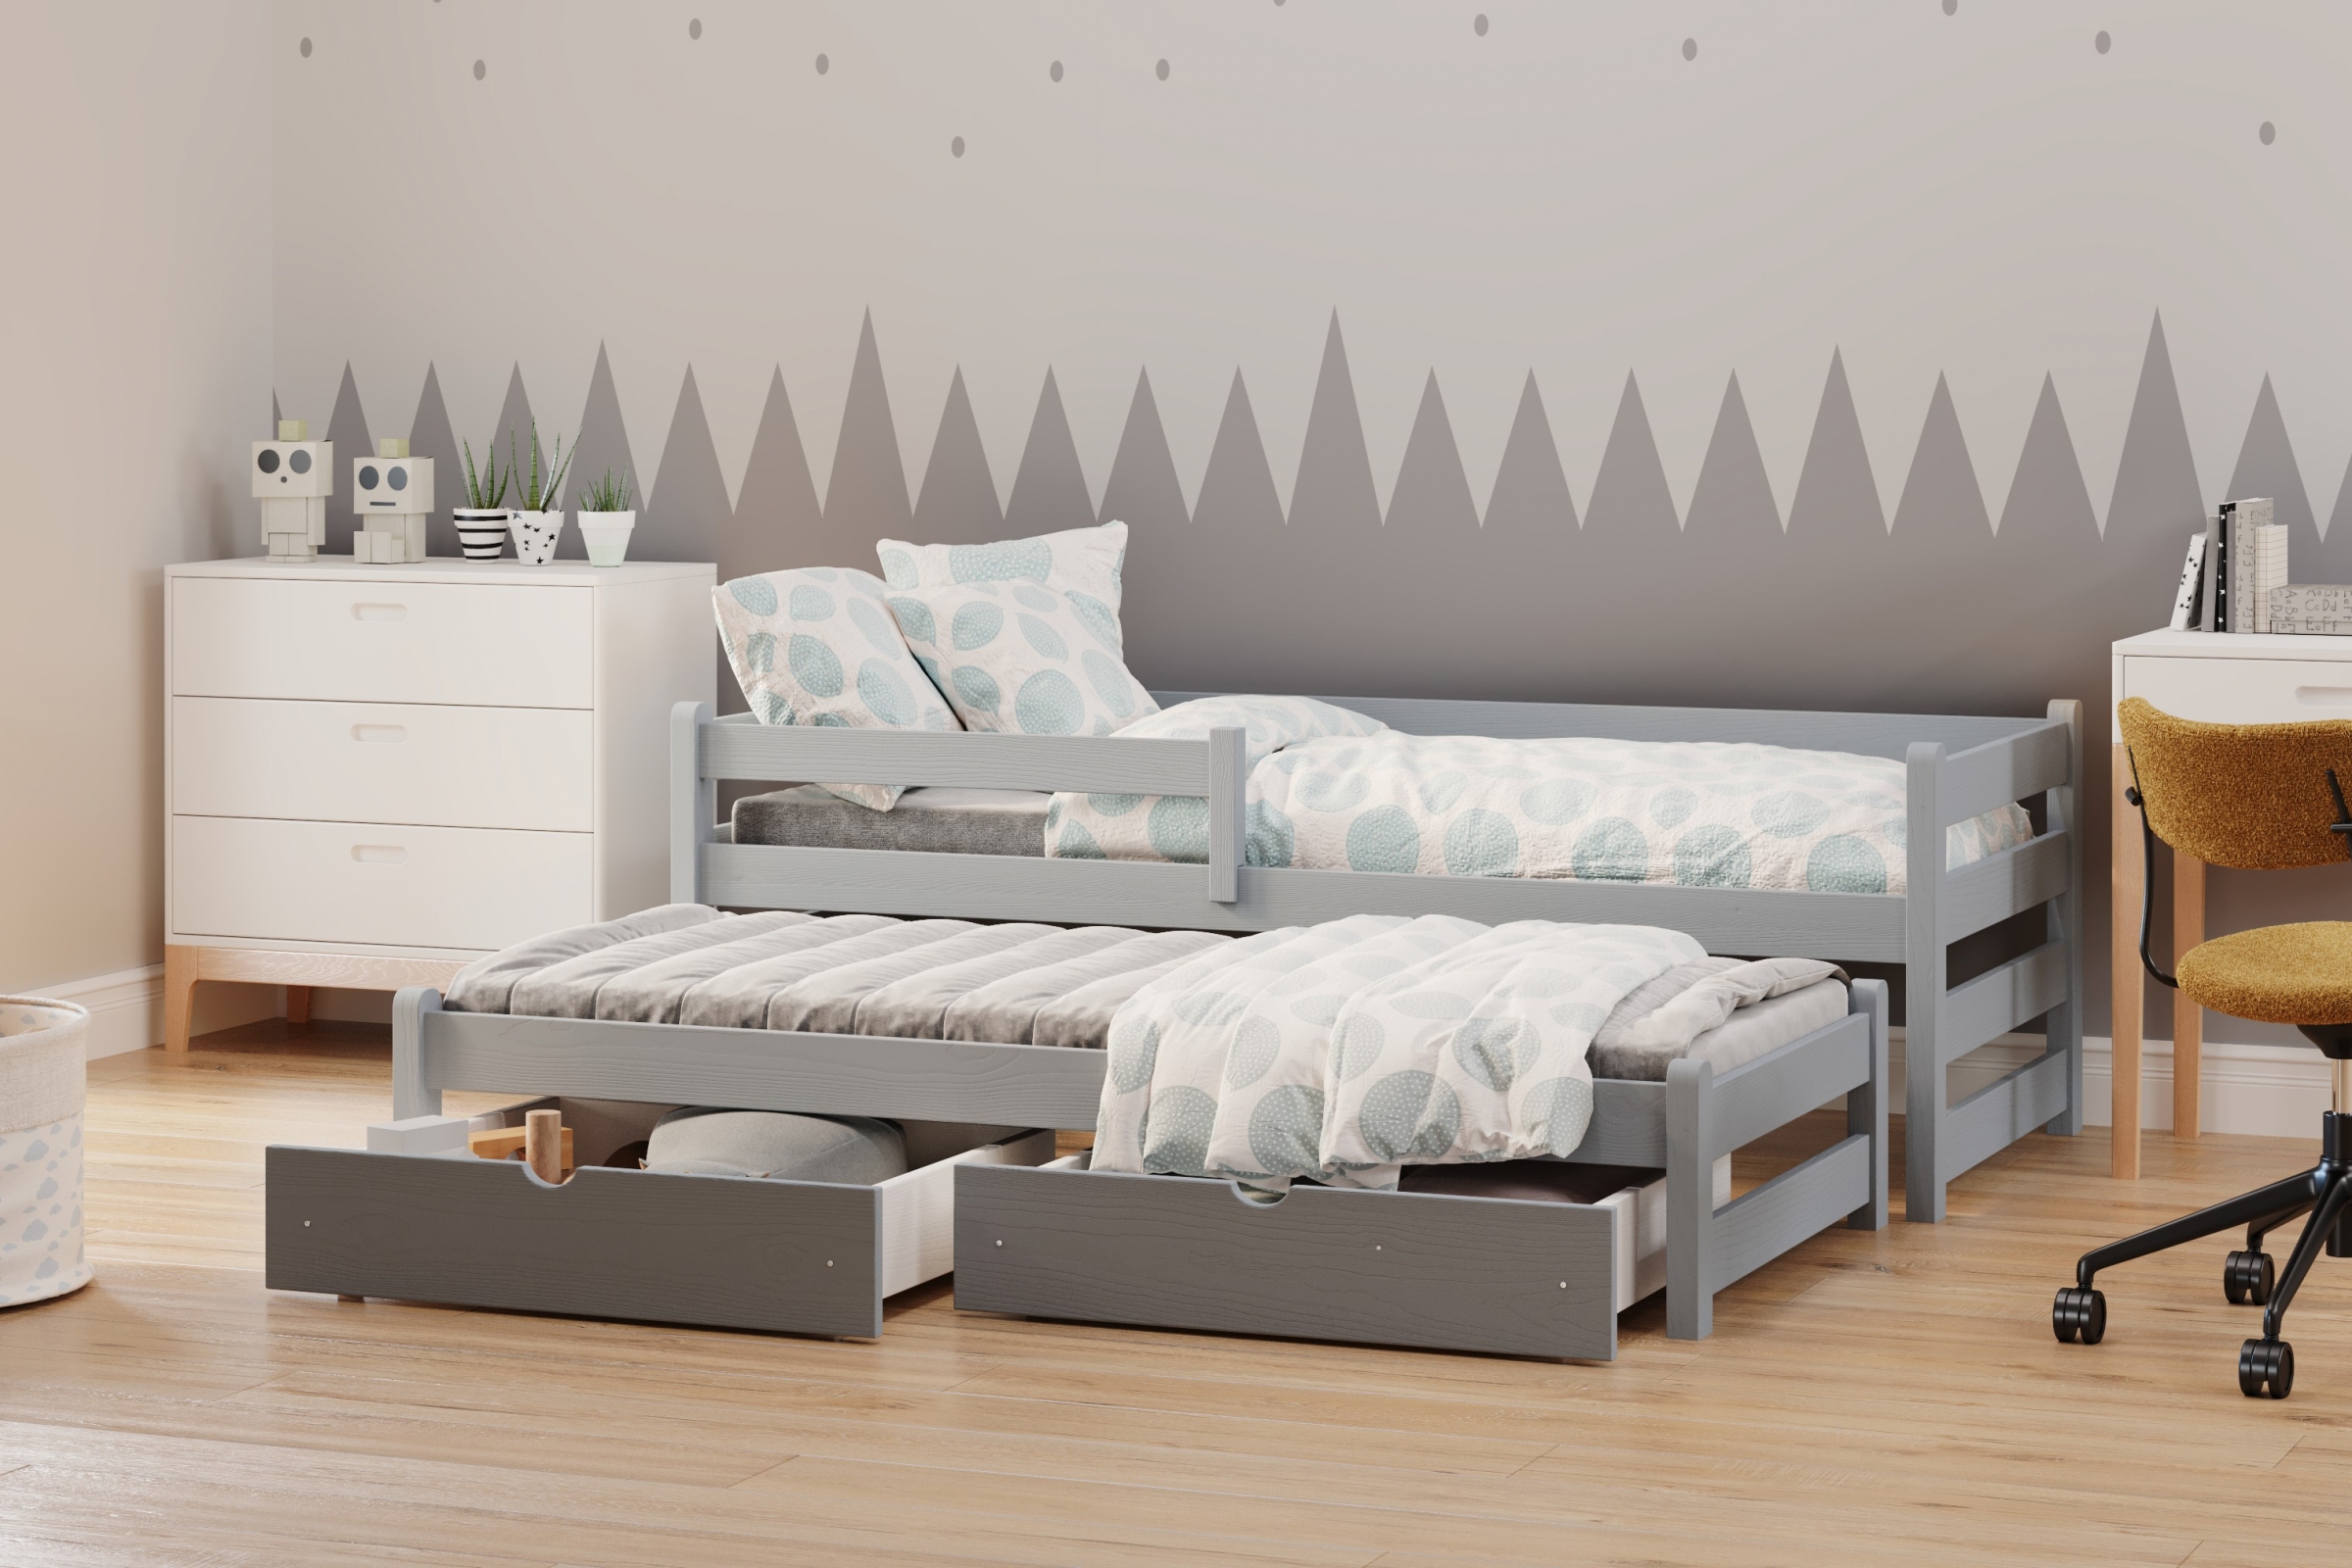 Detská posteľ prízemná s výsuvným lôžkom Alis DPV 001 - šedý, 90x190 Posteľ prízemná s výsuvným lôžkom Alis - Farba šedý - vizualizácia